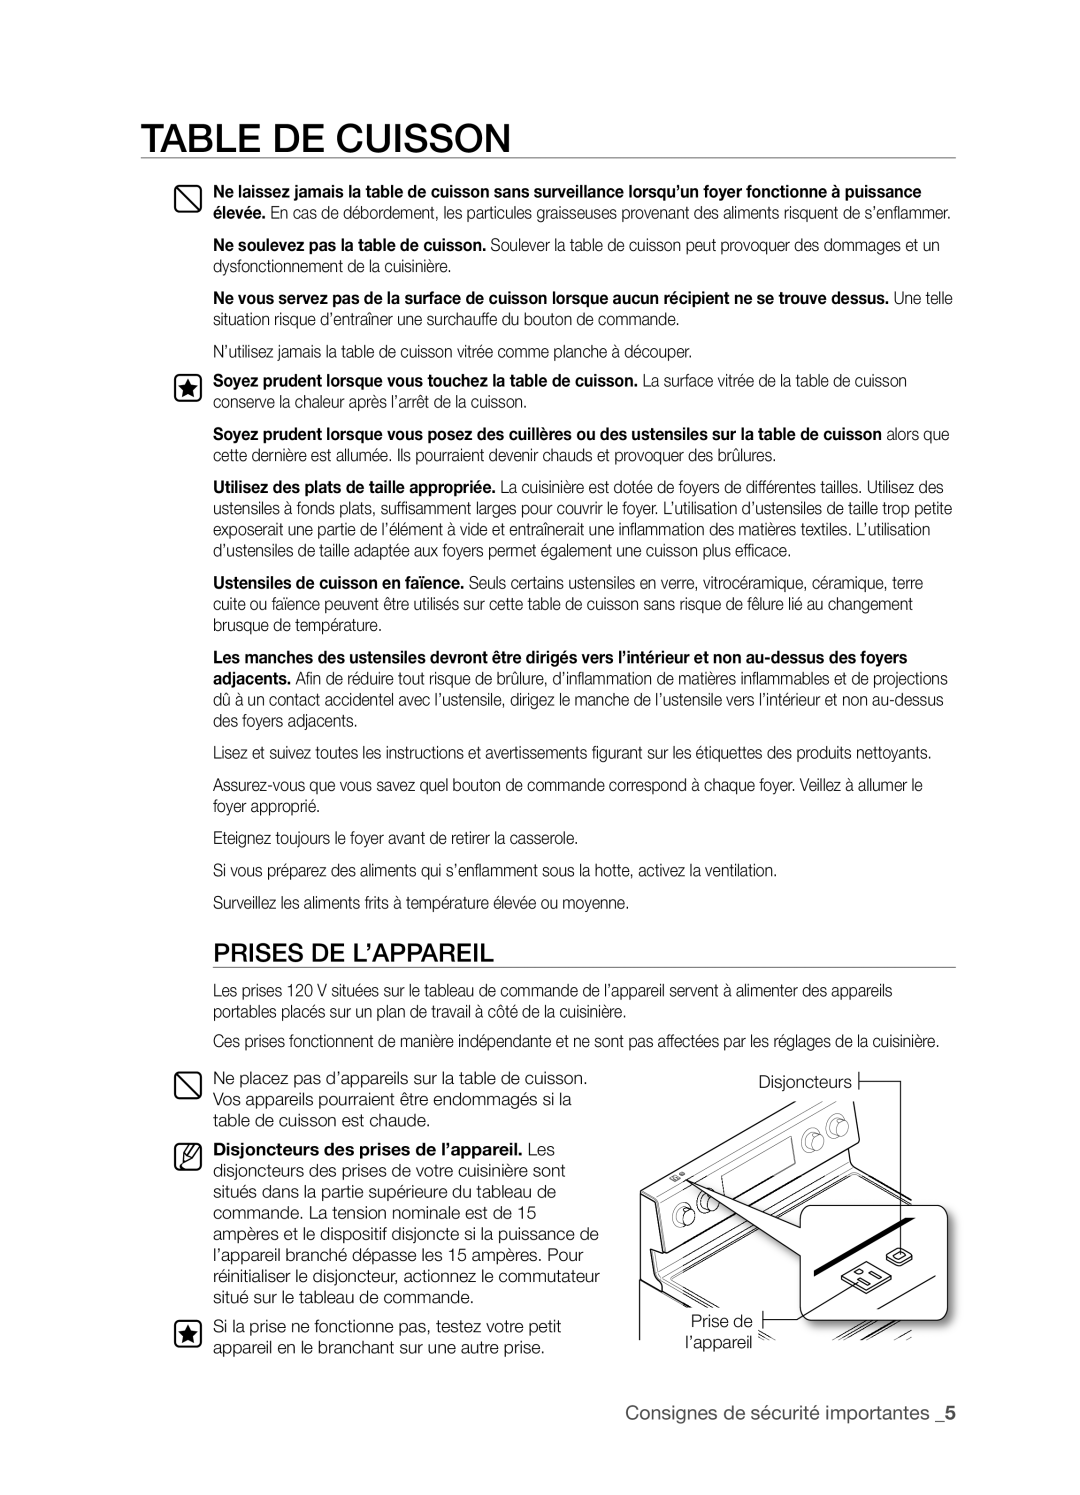 Samsung FTQ386LWX user manual Table De Cuisson, Prises De L’Appareil, Consignes de sécurité importantes _5 